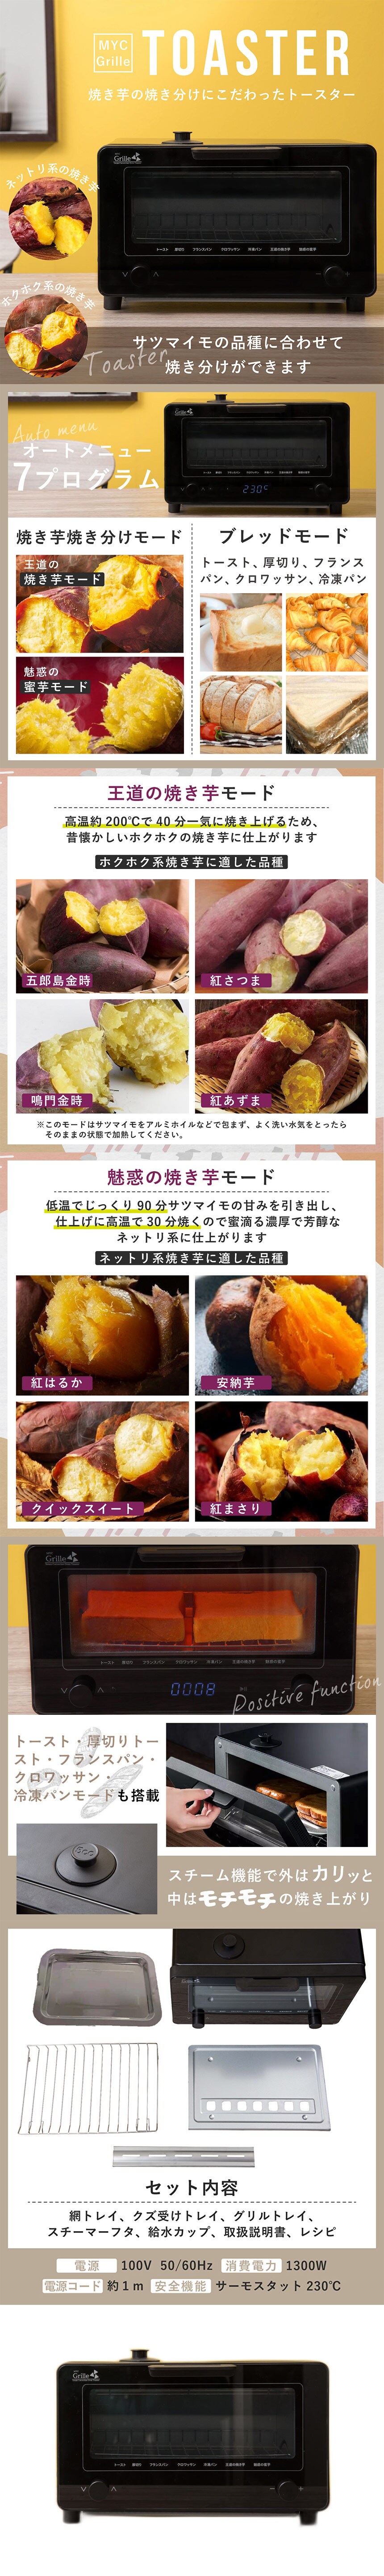 卸売 エムワイシー 芳醇焼き芋トースター myc